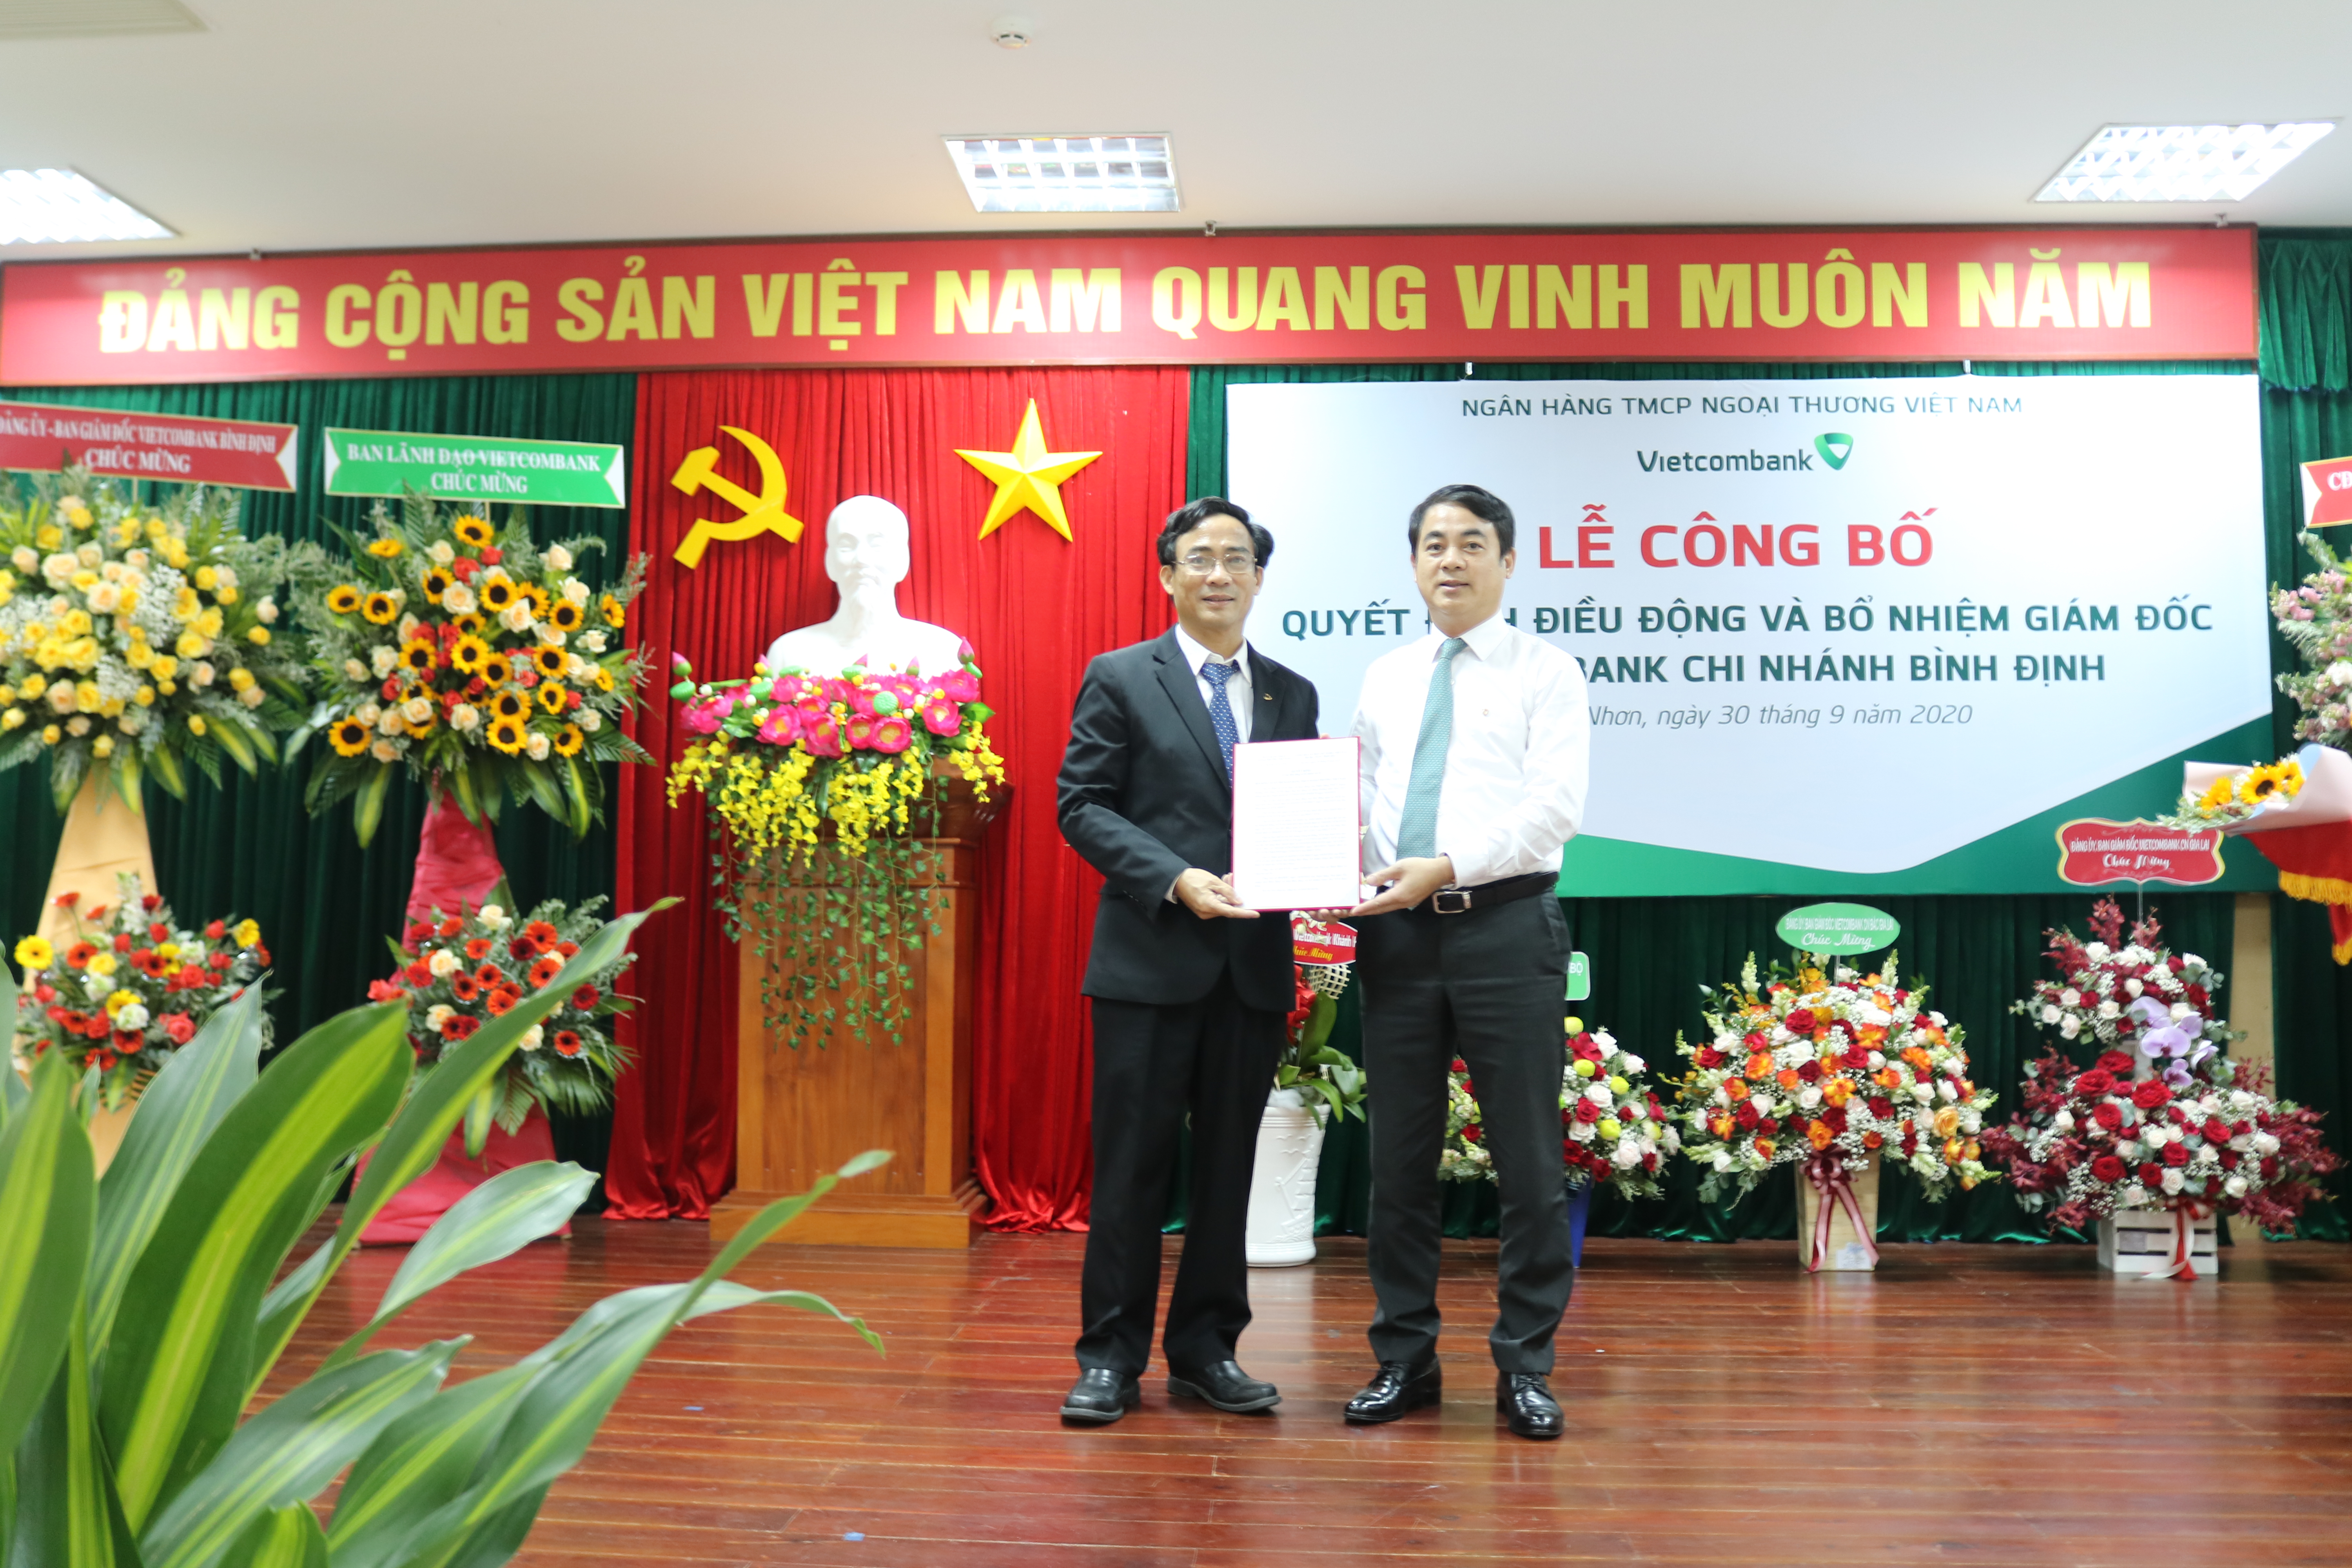 Vietcombank công bố quyết định điều động và bổ nhiệm Giám đốc các chi nhánh Quy Nhơn và Bình Định